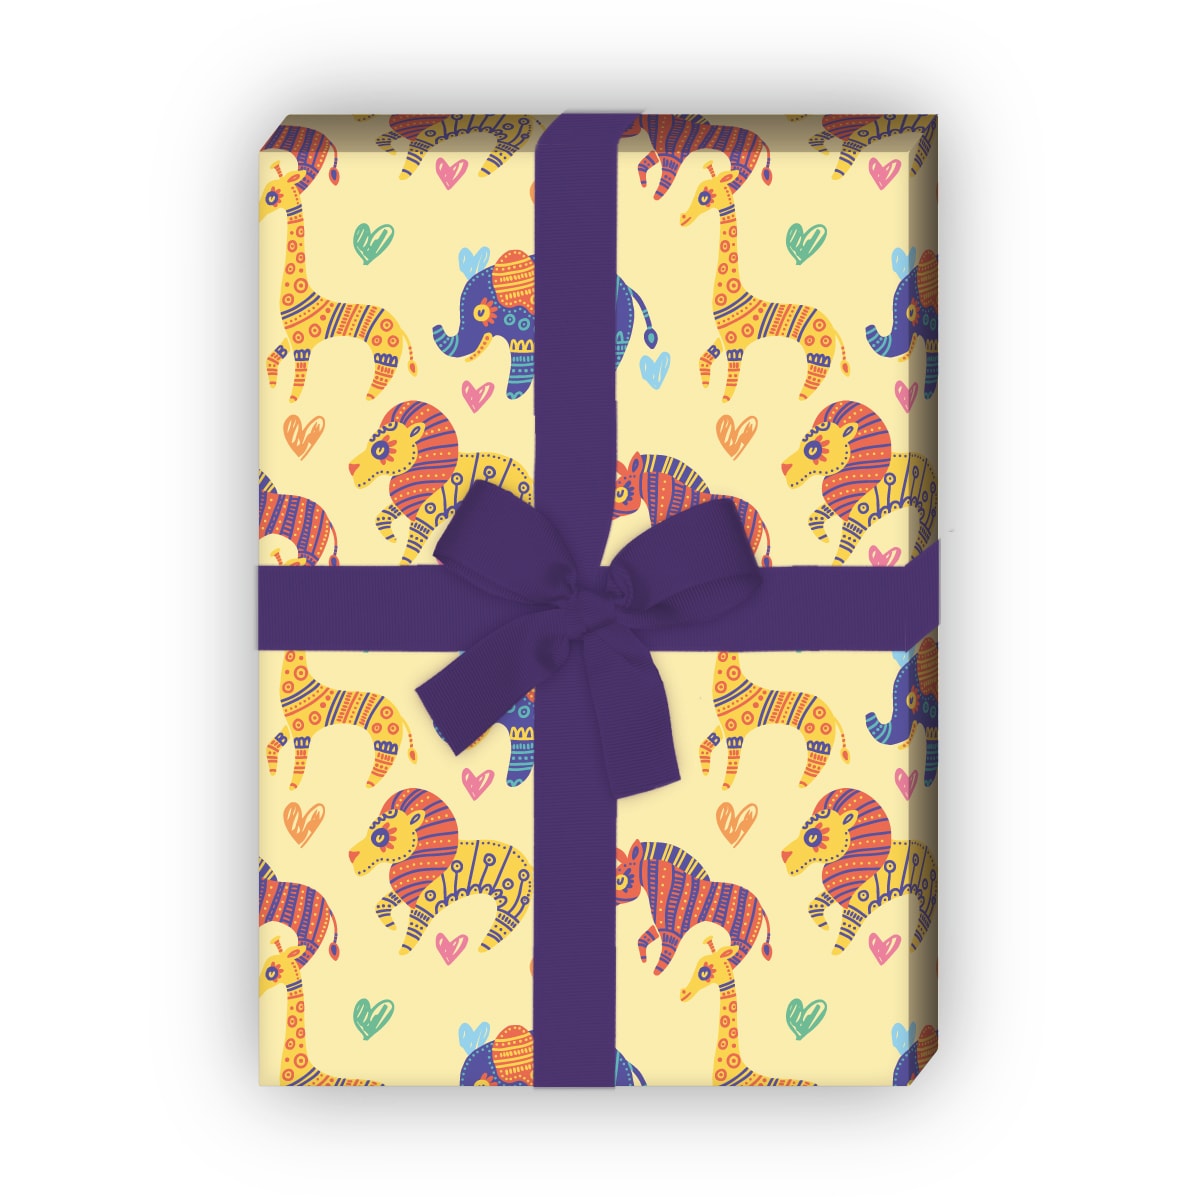 Kartenkaufrausch: Schönes Kinder Geschenkpapier mit aus unserer Kinder Papeterie in gelb